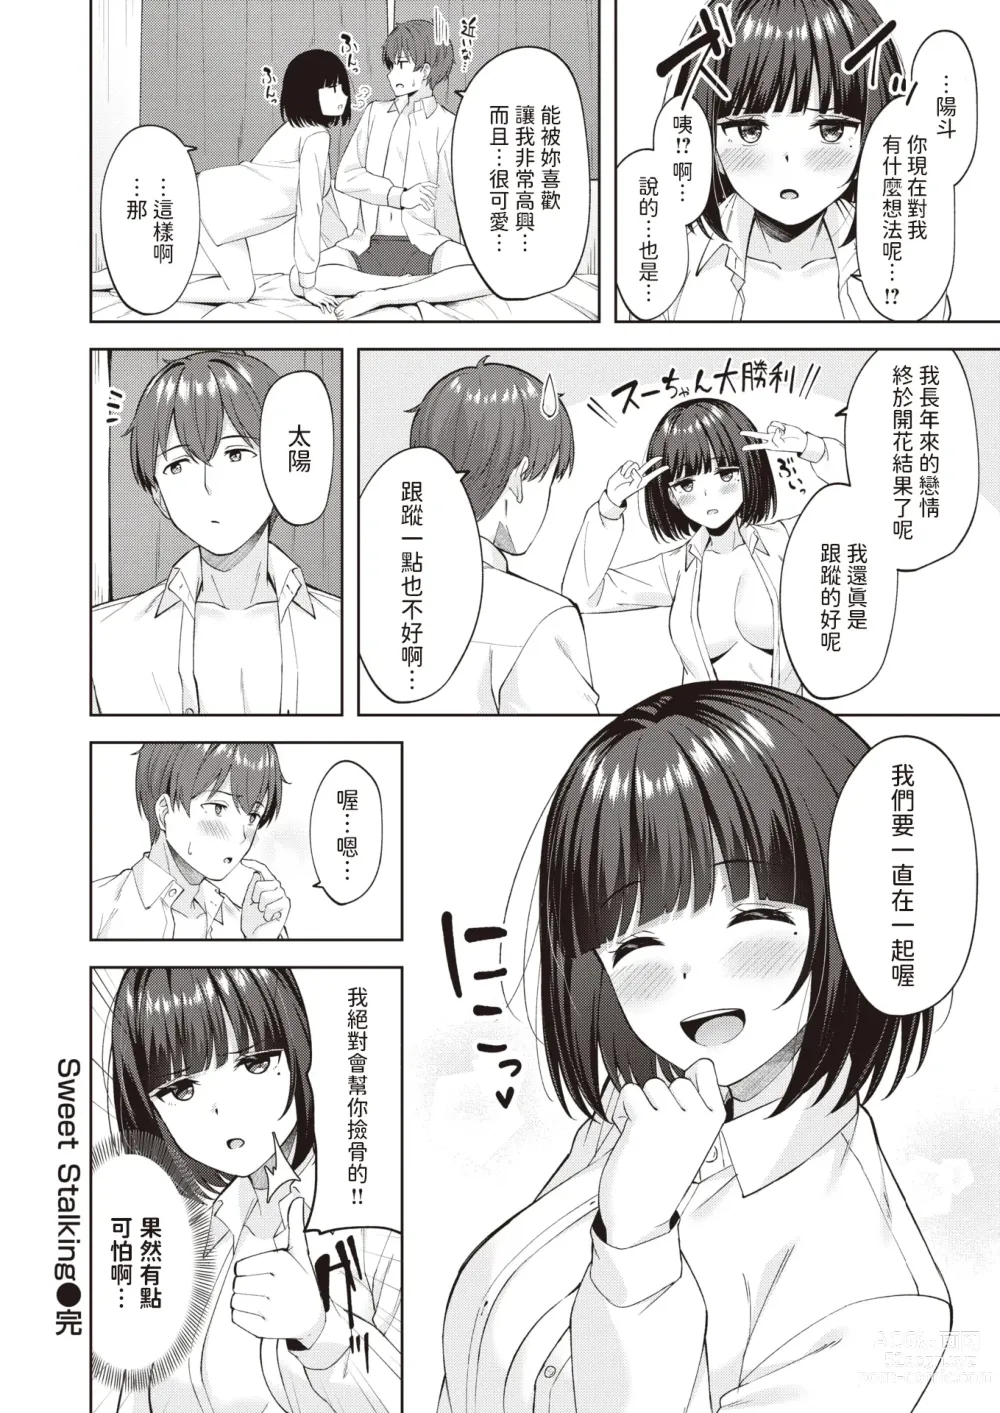 Page 26 of manga Sweet Stalking